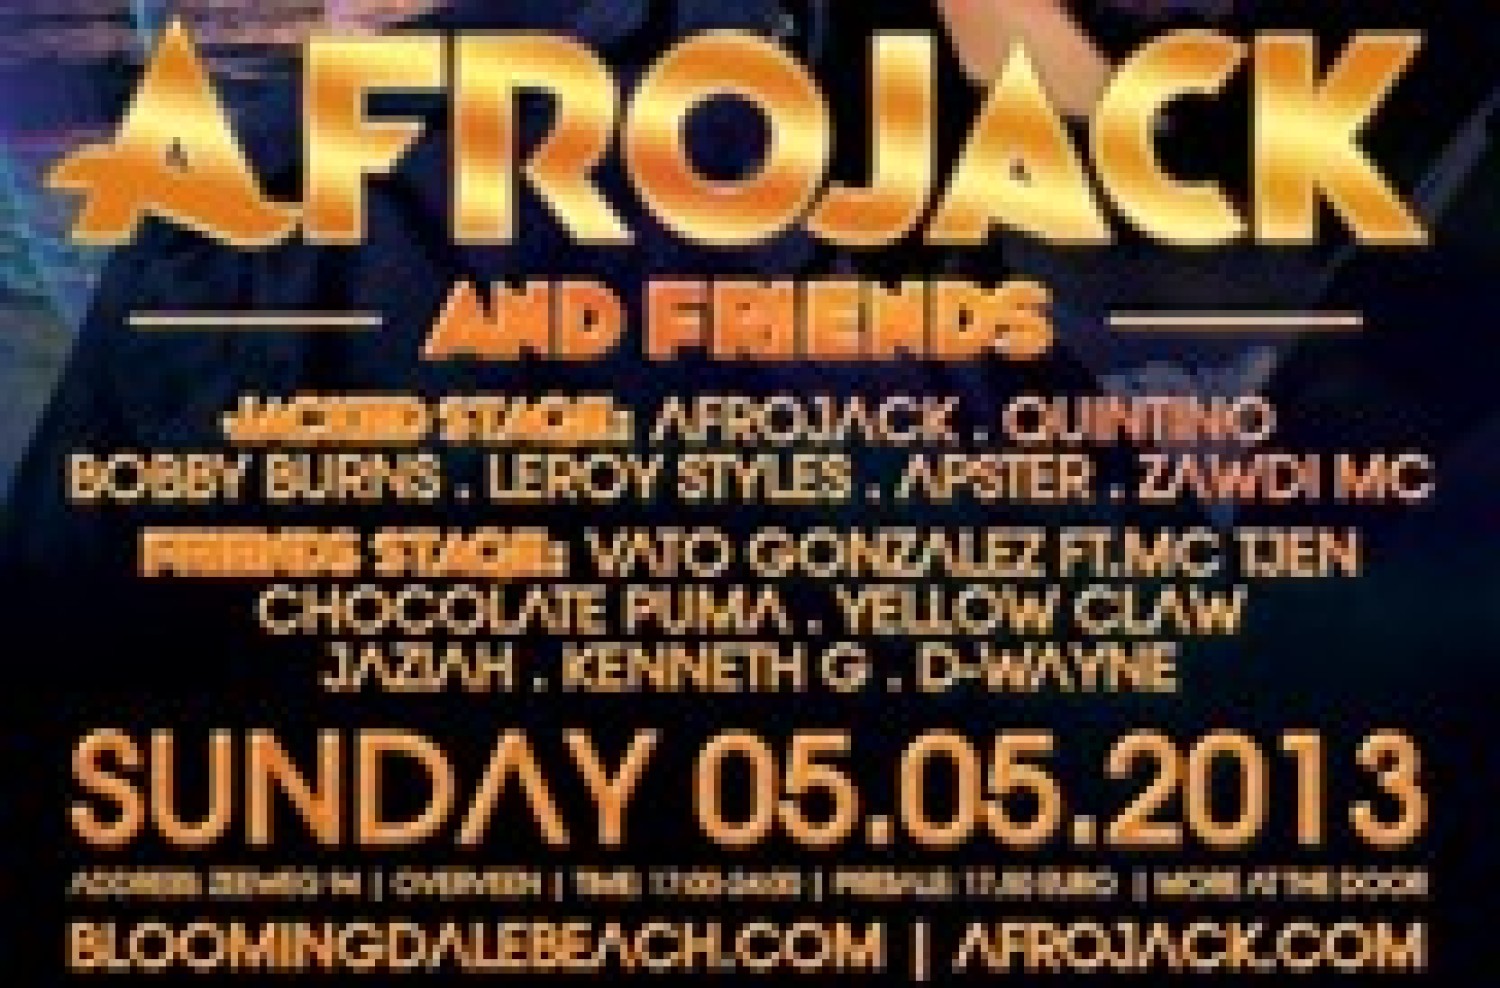 Party nieuws: Afrojack and Friends 5 mei op het Bloemendaalse strand!